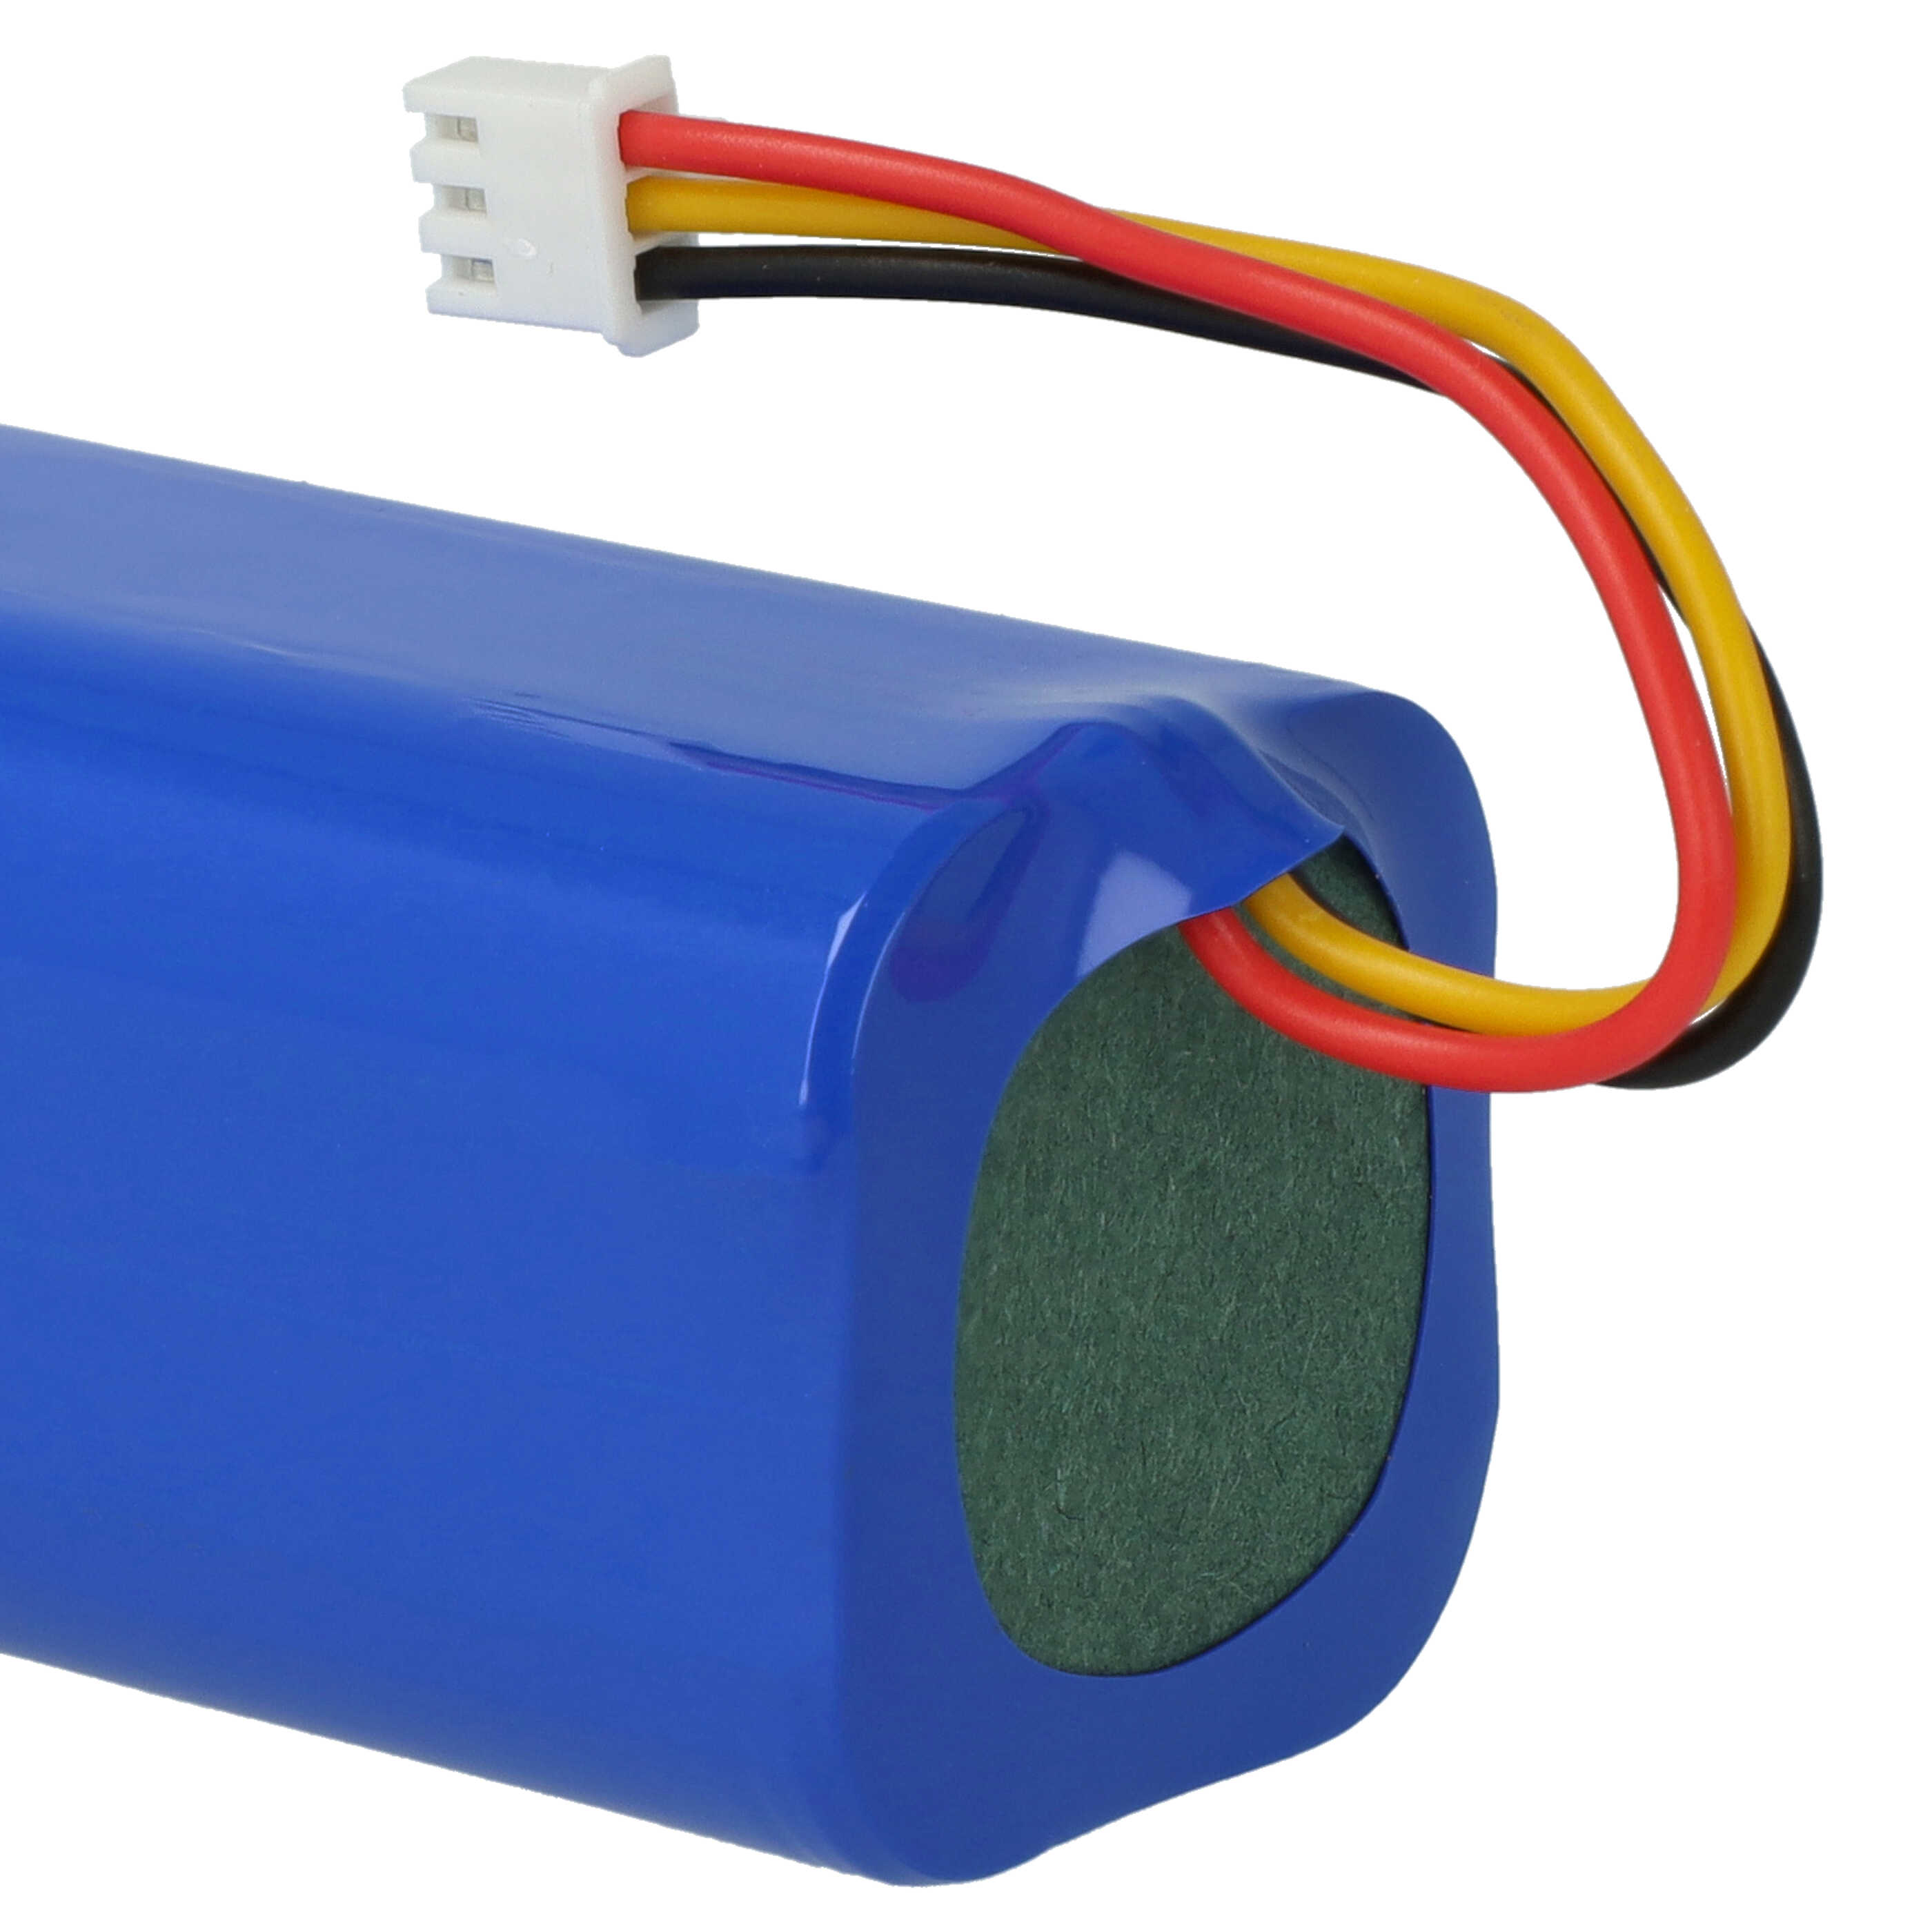 Batterie remplace Blaupunkt 6.60.40.02-0, D071-INR-CH-4S1P pour robot aspirateur - 2600mAh 14,4V Li-ion